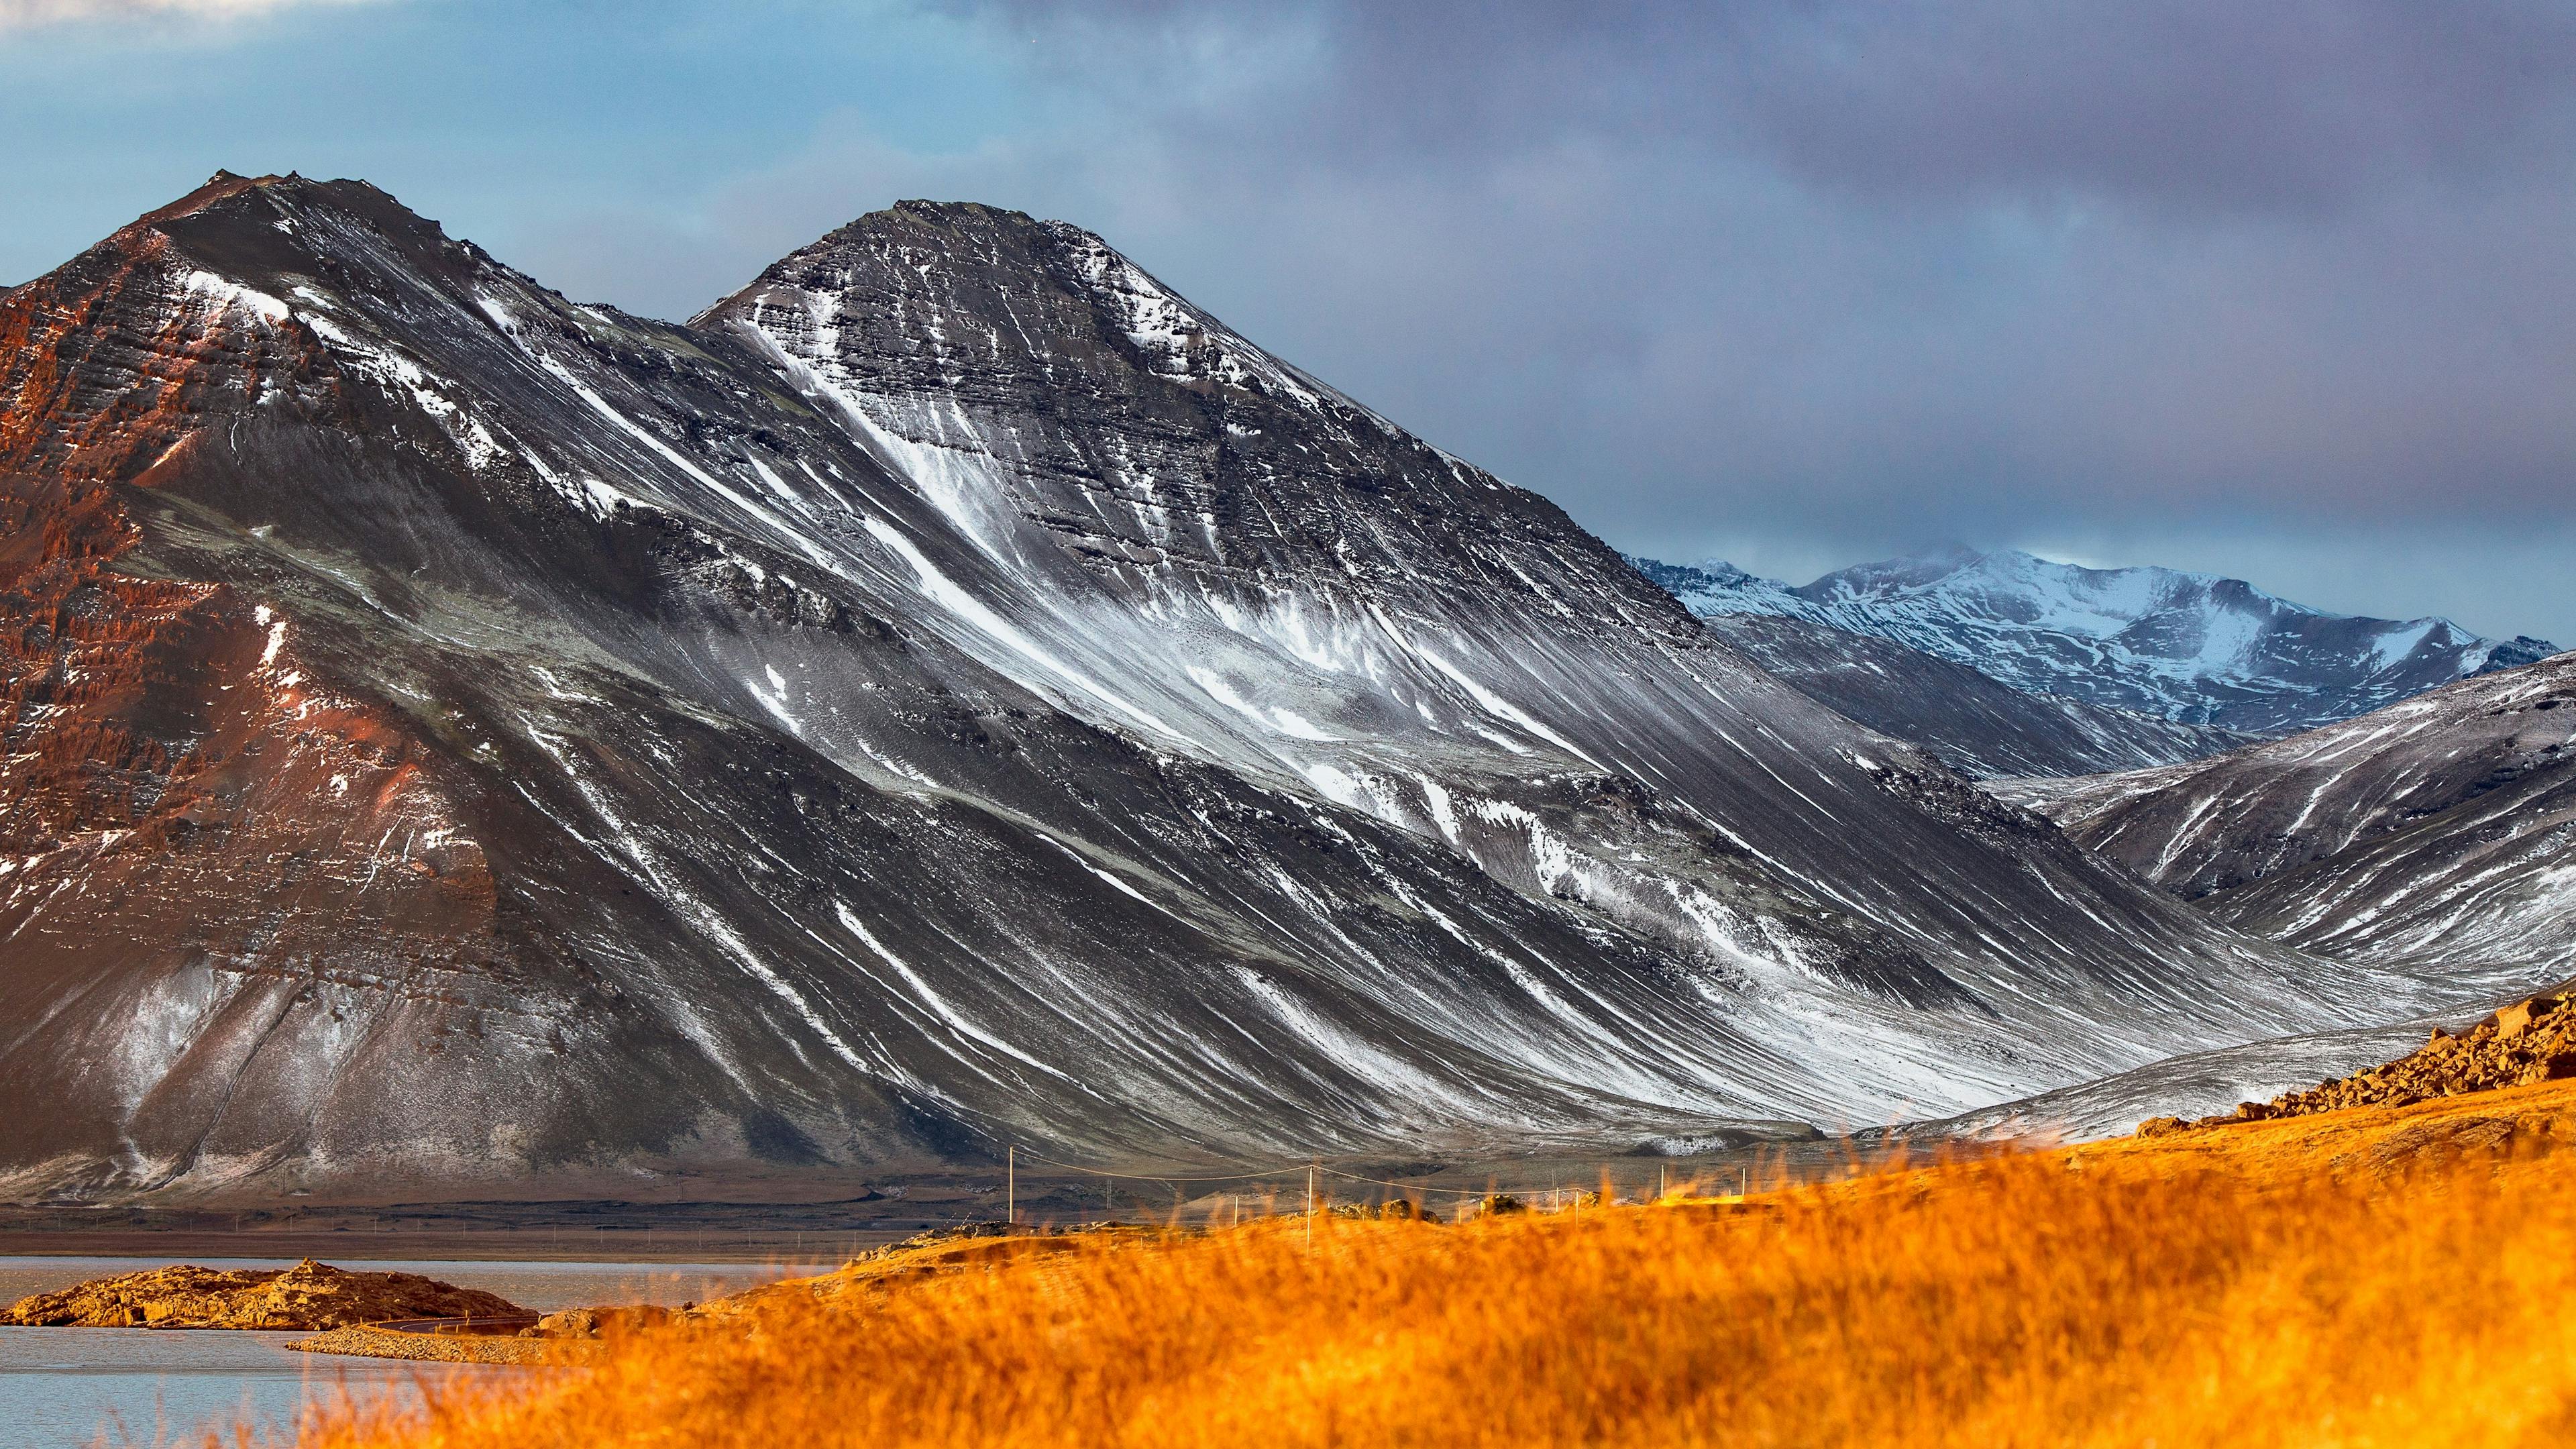 Þjóðvegur mountains in Iceland.